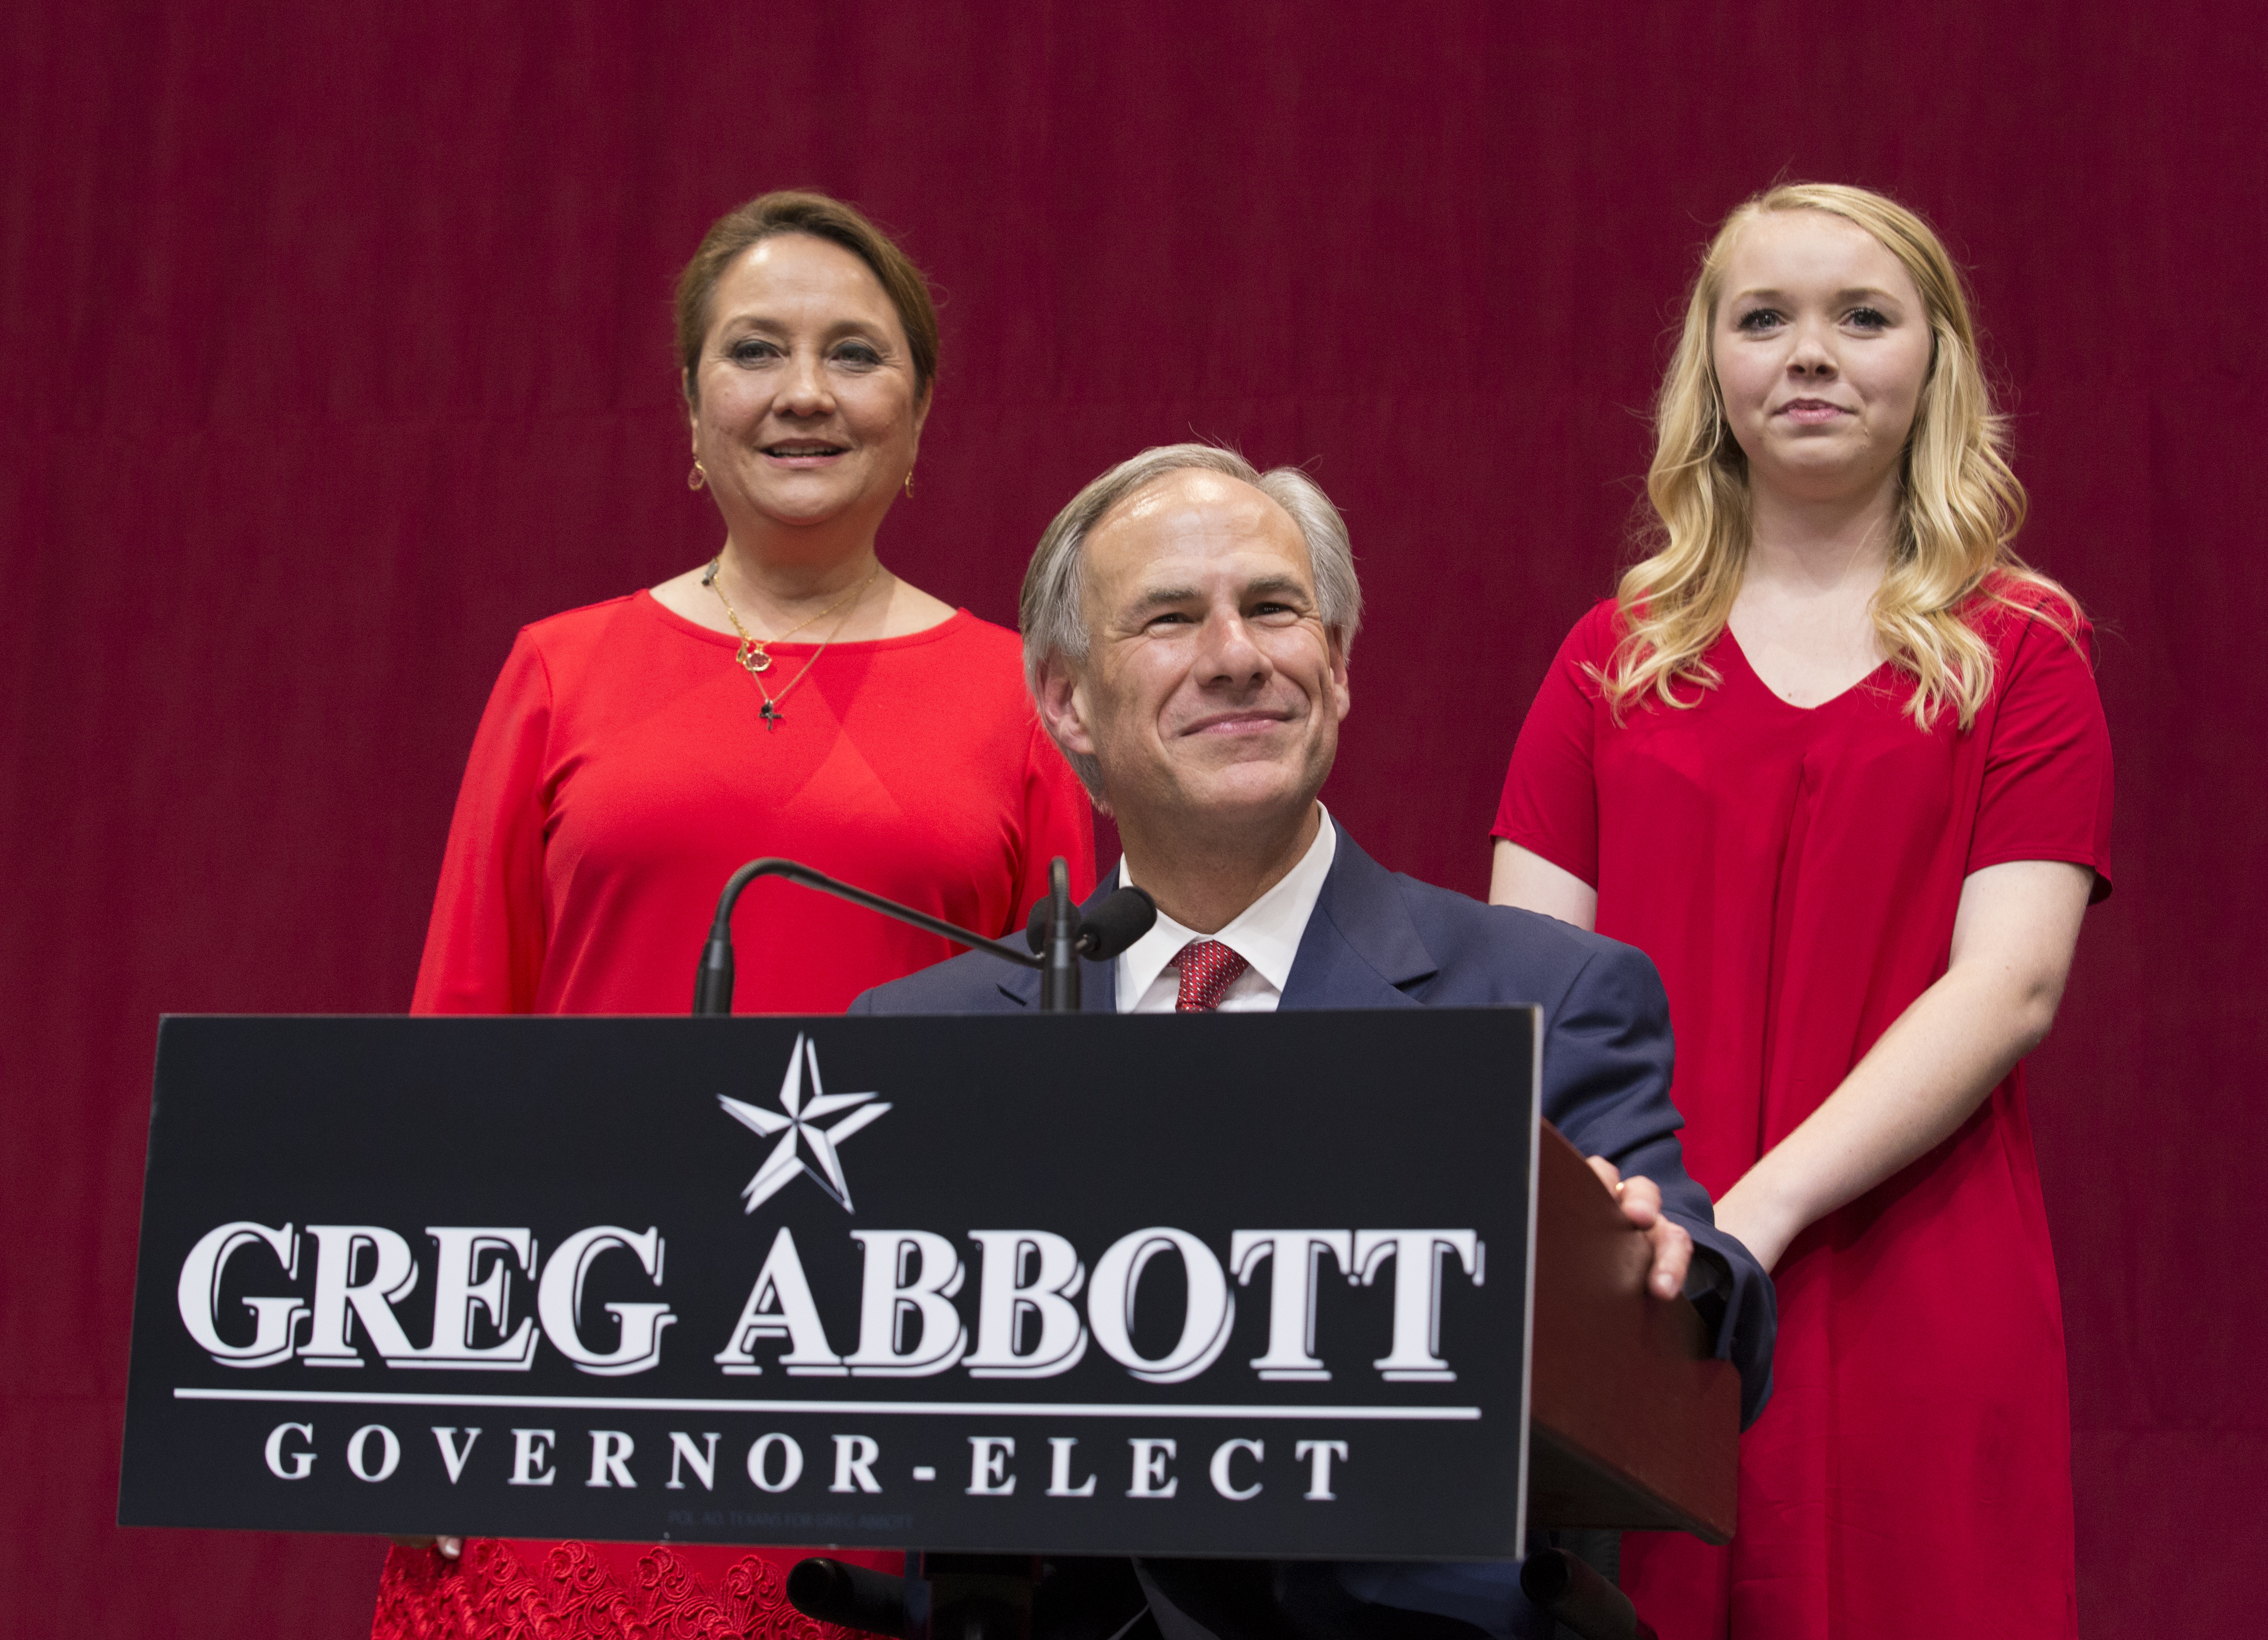 Audrey Abbott, die erste Tochter von Texas, setzte sich bei mehreren Veranstaltungen im ganzen Bundesstaat für die politischen Ambitionen ihres Vaters ein